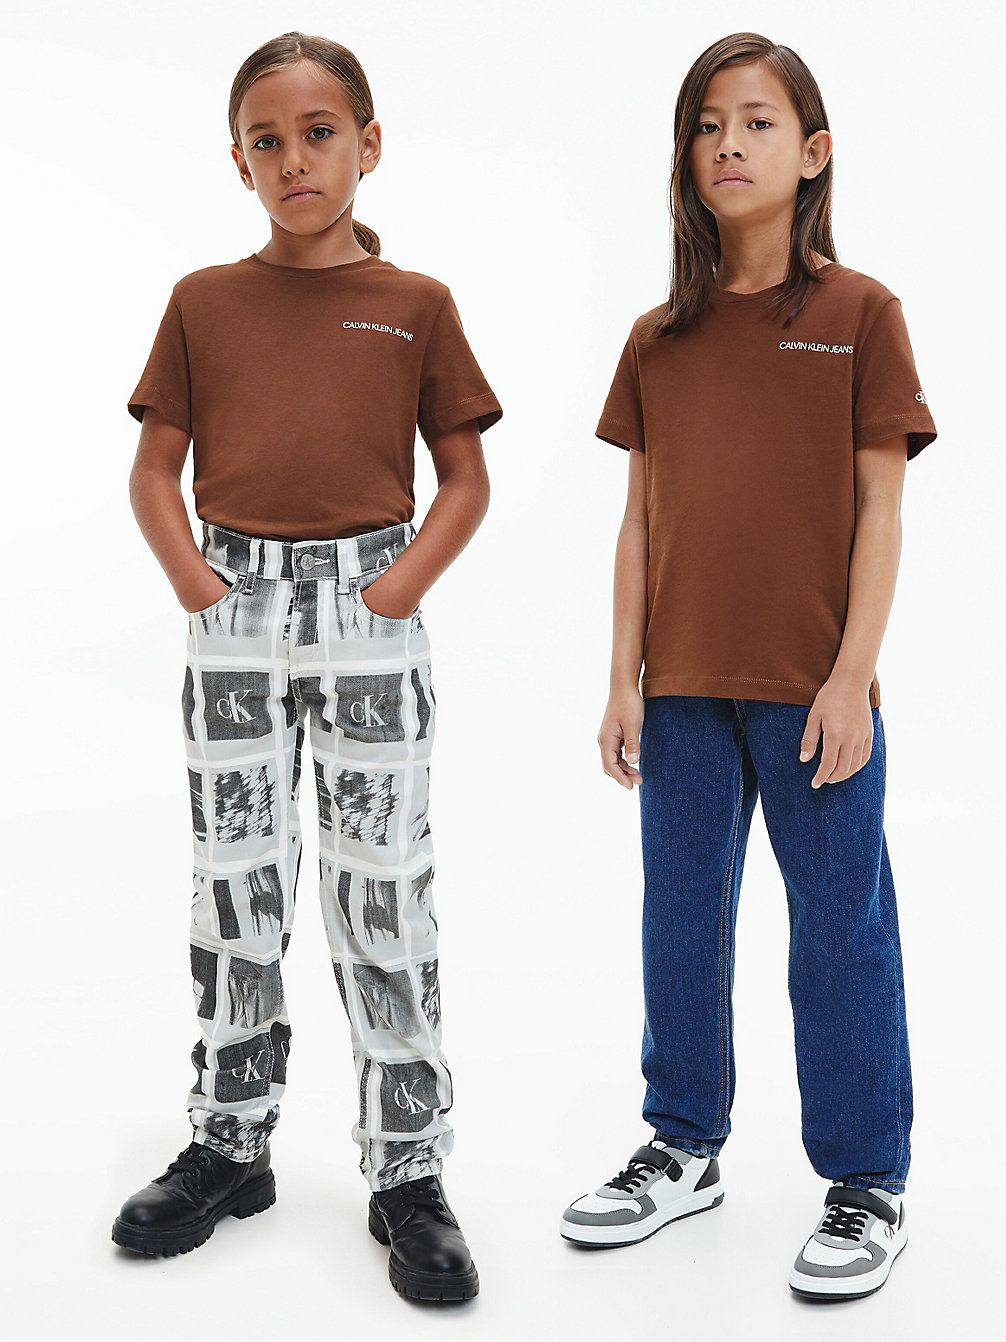 T-Shirt Unisex In Cotone Biologico > MILK CHOCOLATE > undefined kids unisex > Calvin Klein